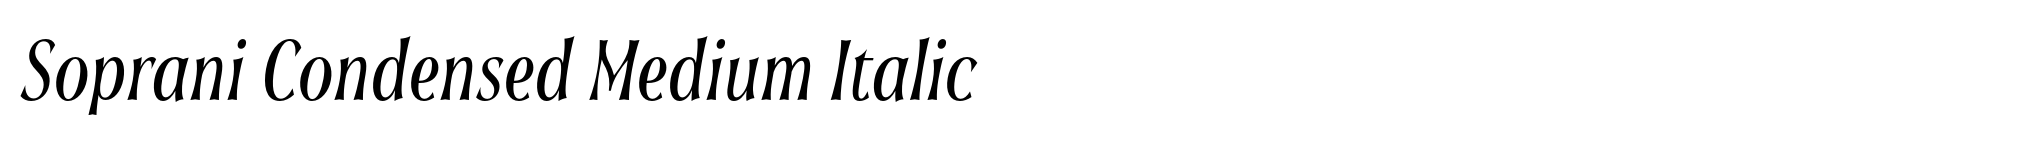 Soprani Condensed Medium Italic image